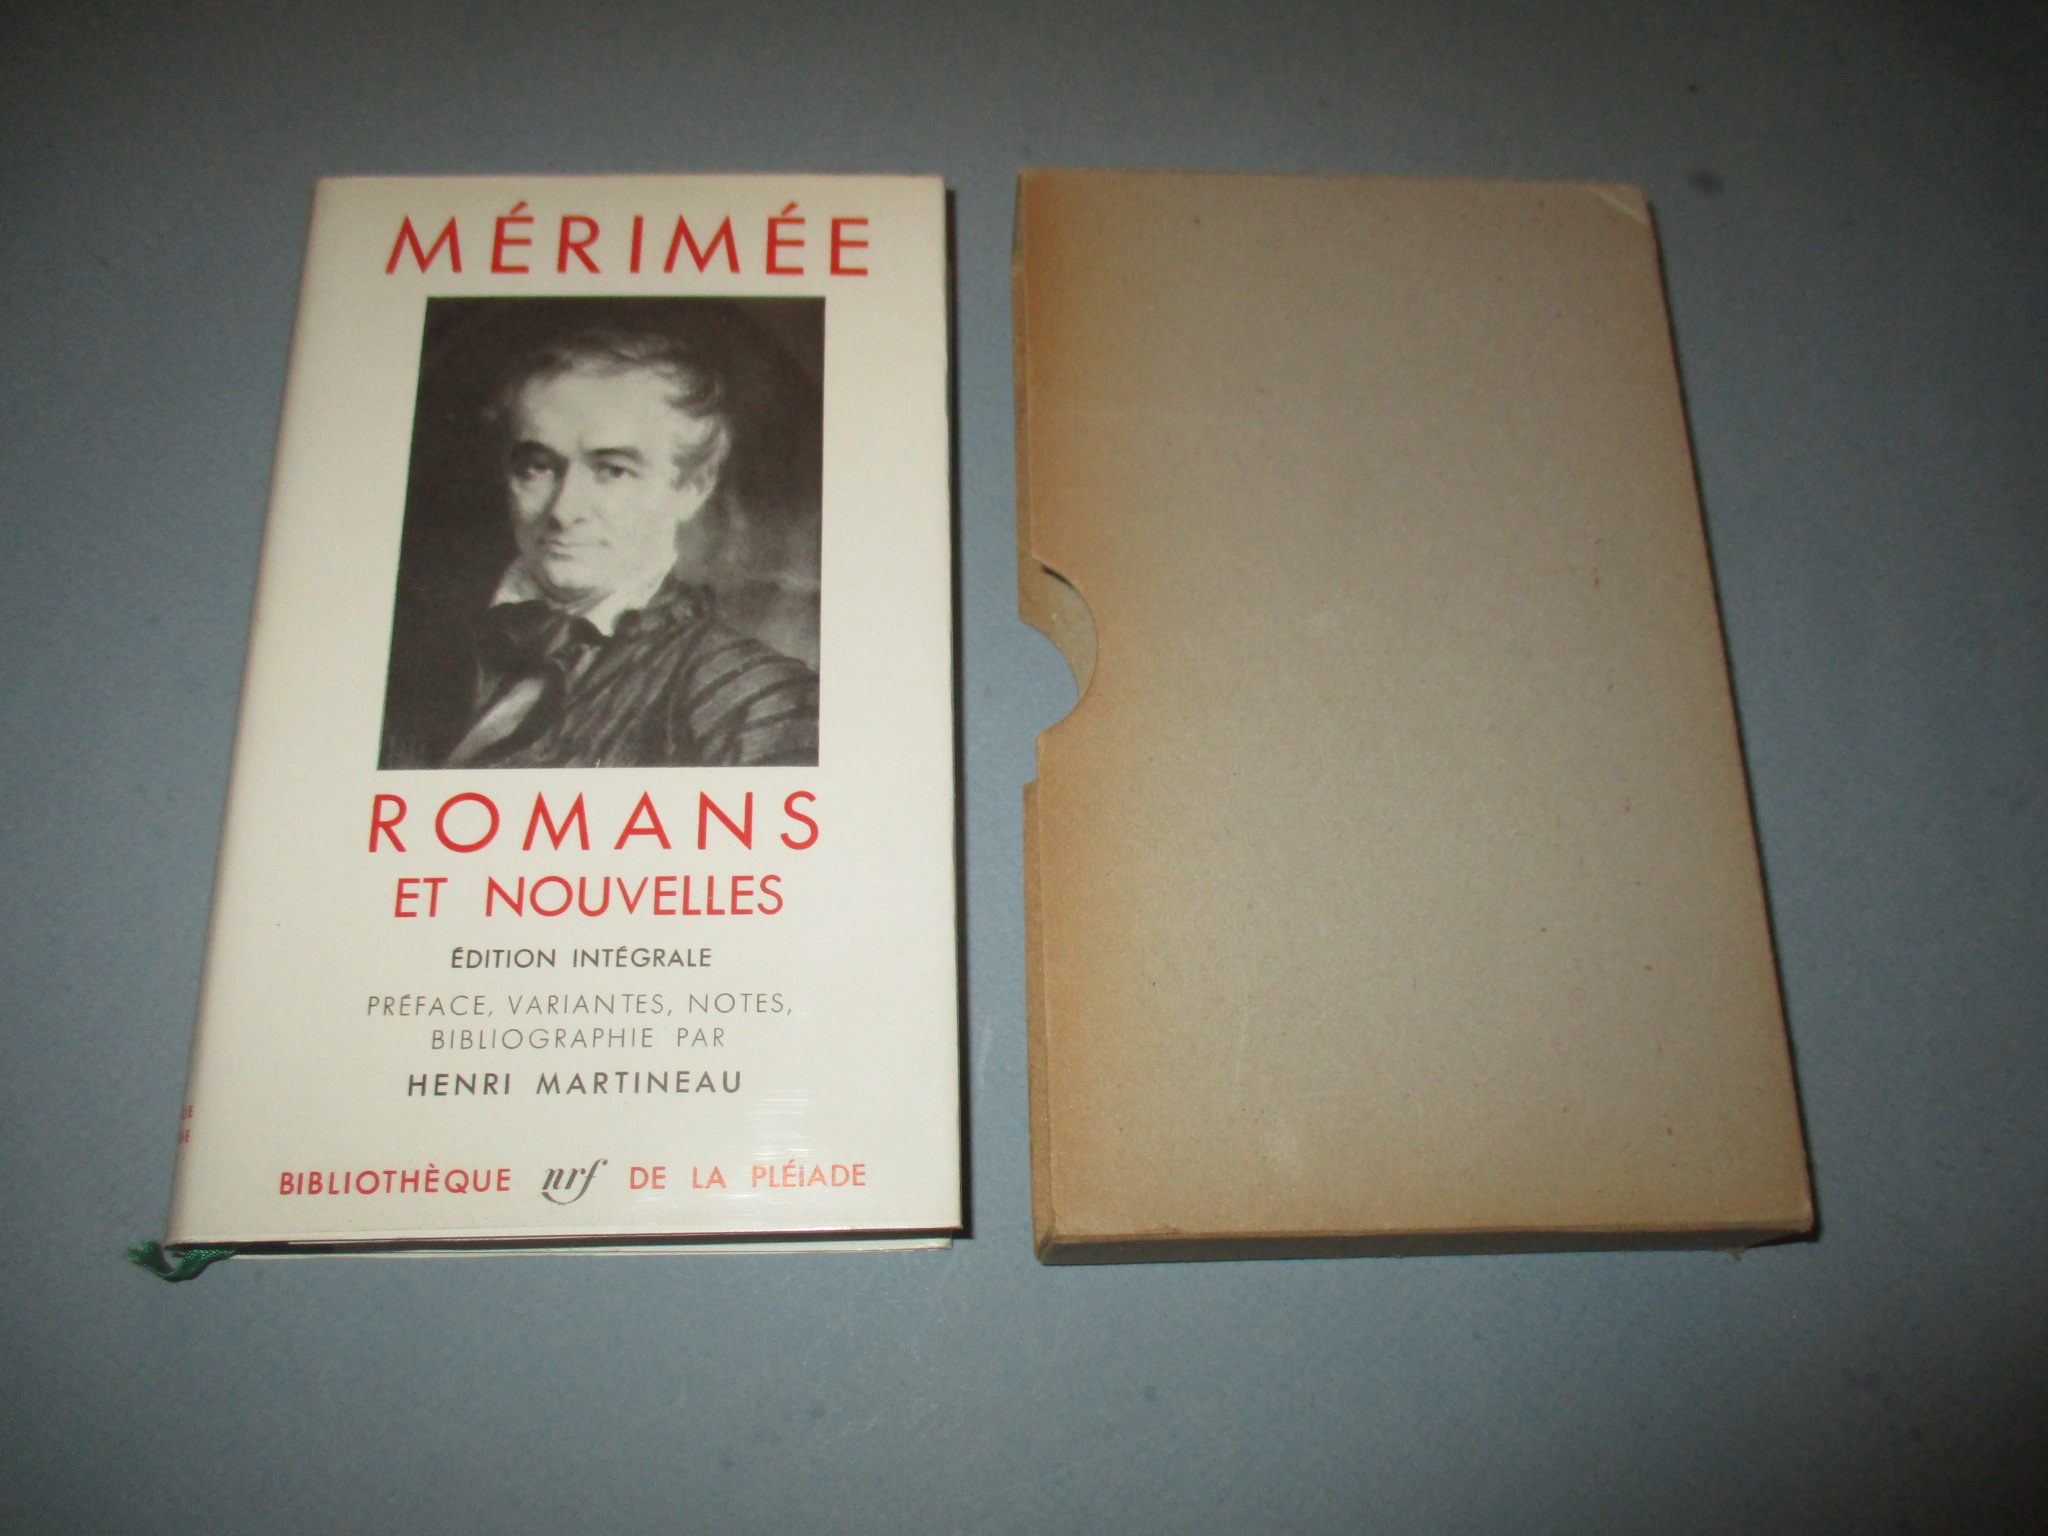 Romans et nouvelles, Prosper Mérimée, Edition intégrale, La Pléiade 1957